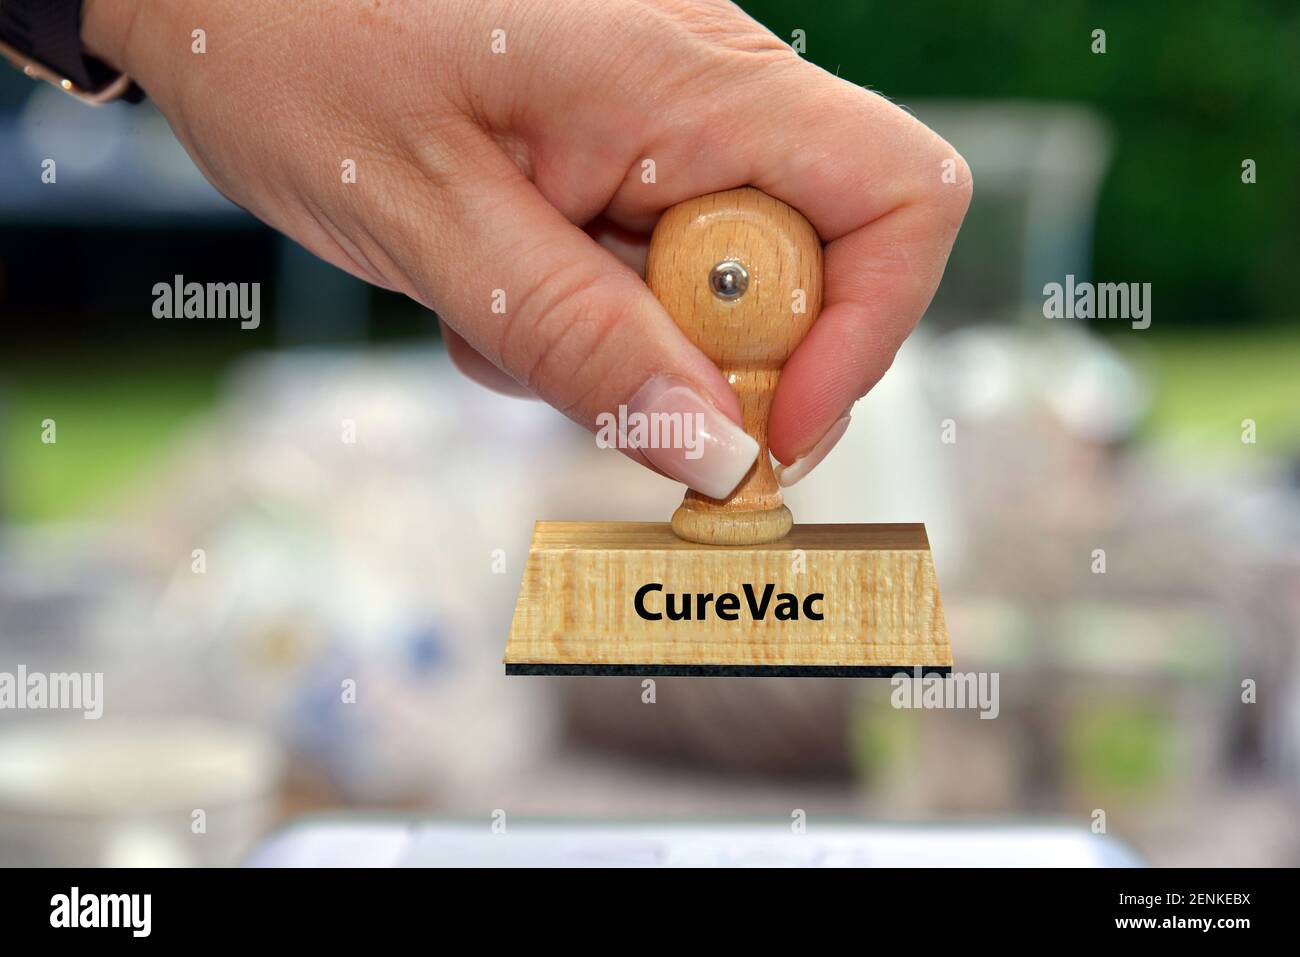 Stempel, Holzstempel, Aufschrift: CureVac, Impfstoffhersteller, Pharmaunternehmen, Covid-19 Impfstoff, Forschung, mRNA-Impfstoff,  mRNA, Stock Photo